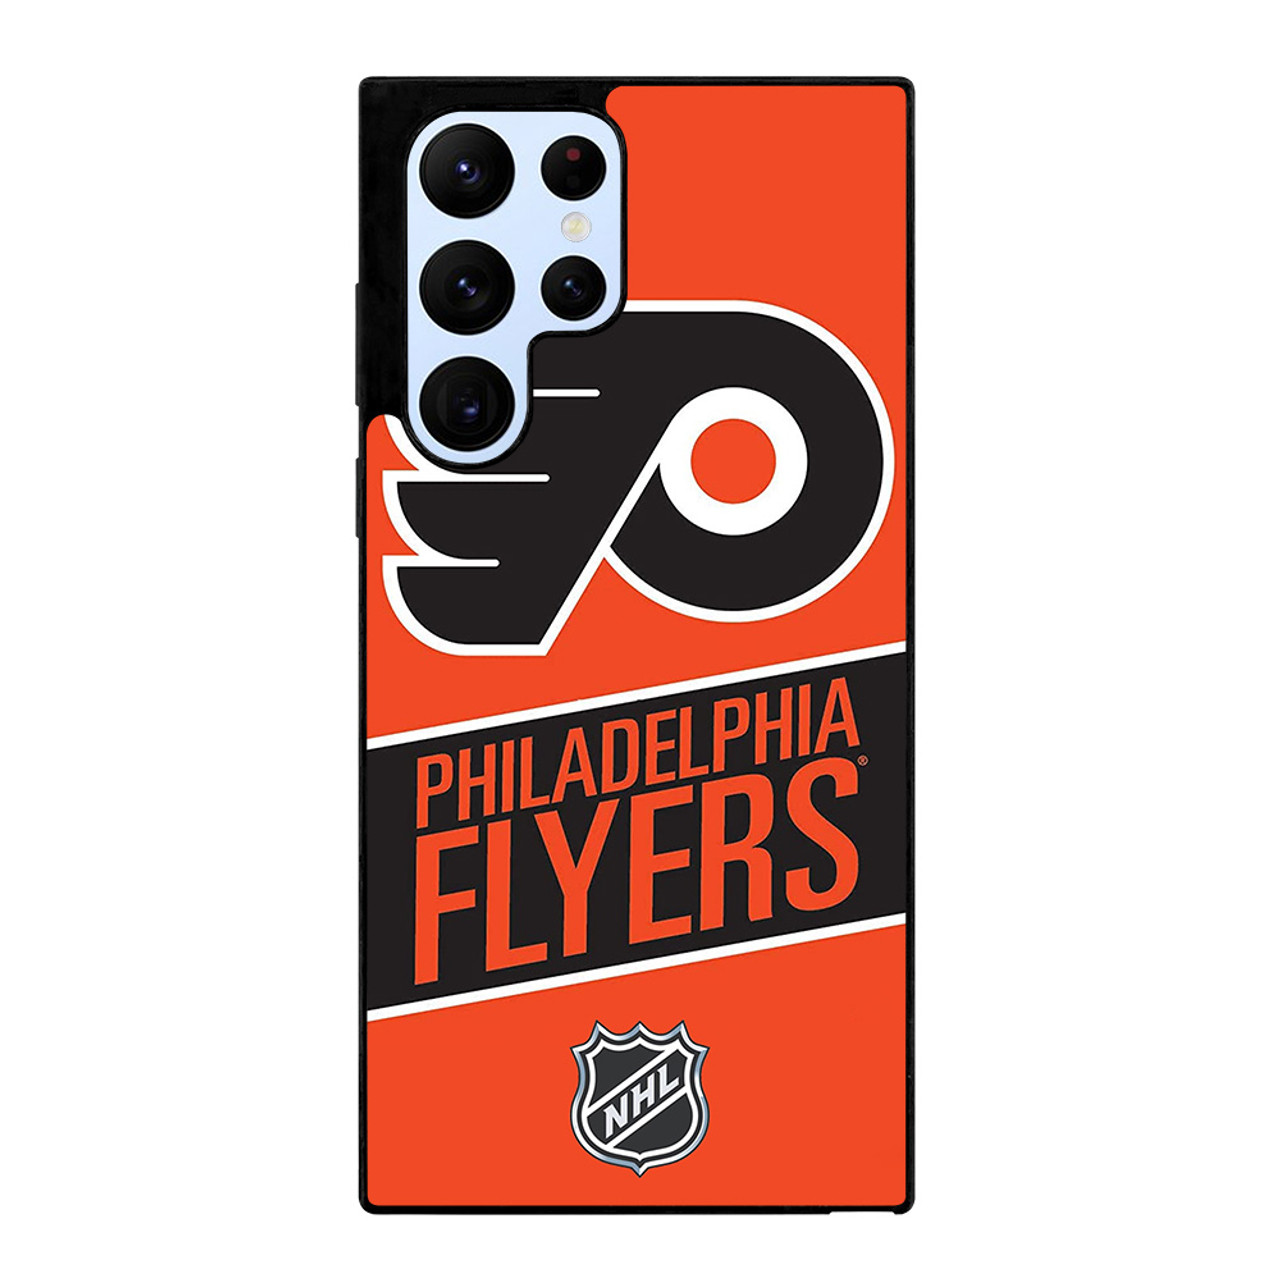 Philadelphia Flyers (Nhl Teams)